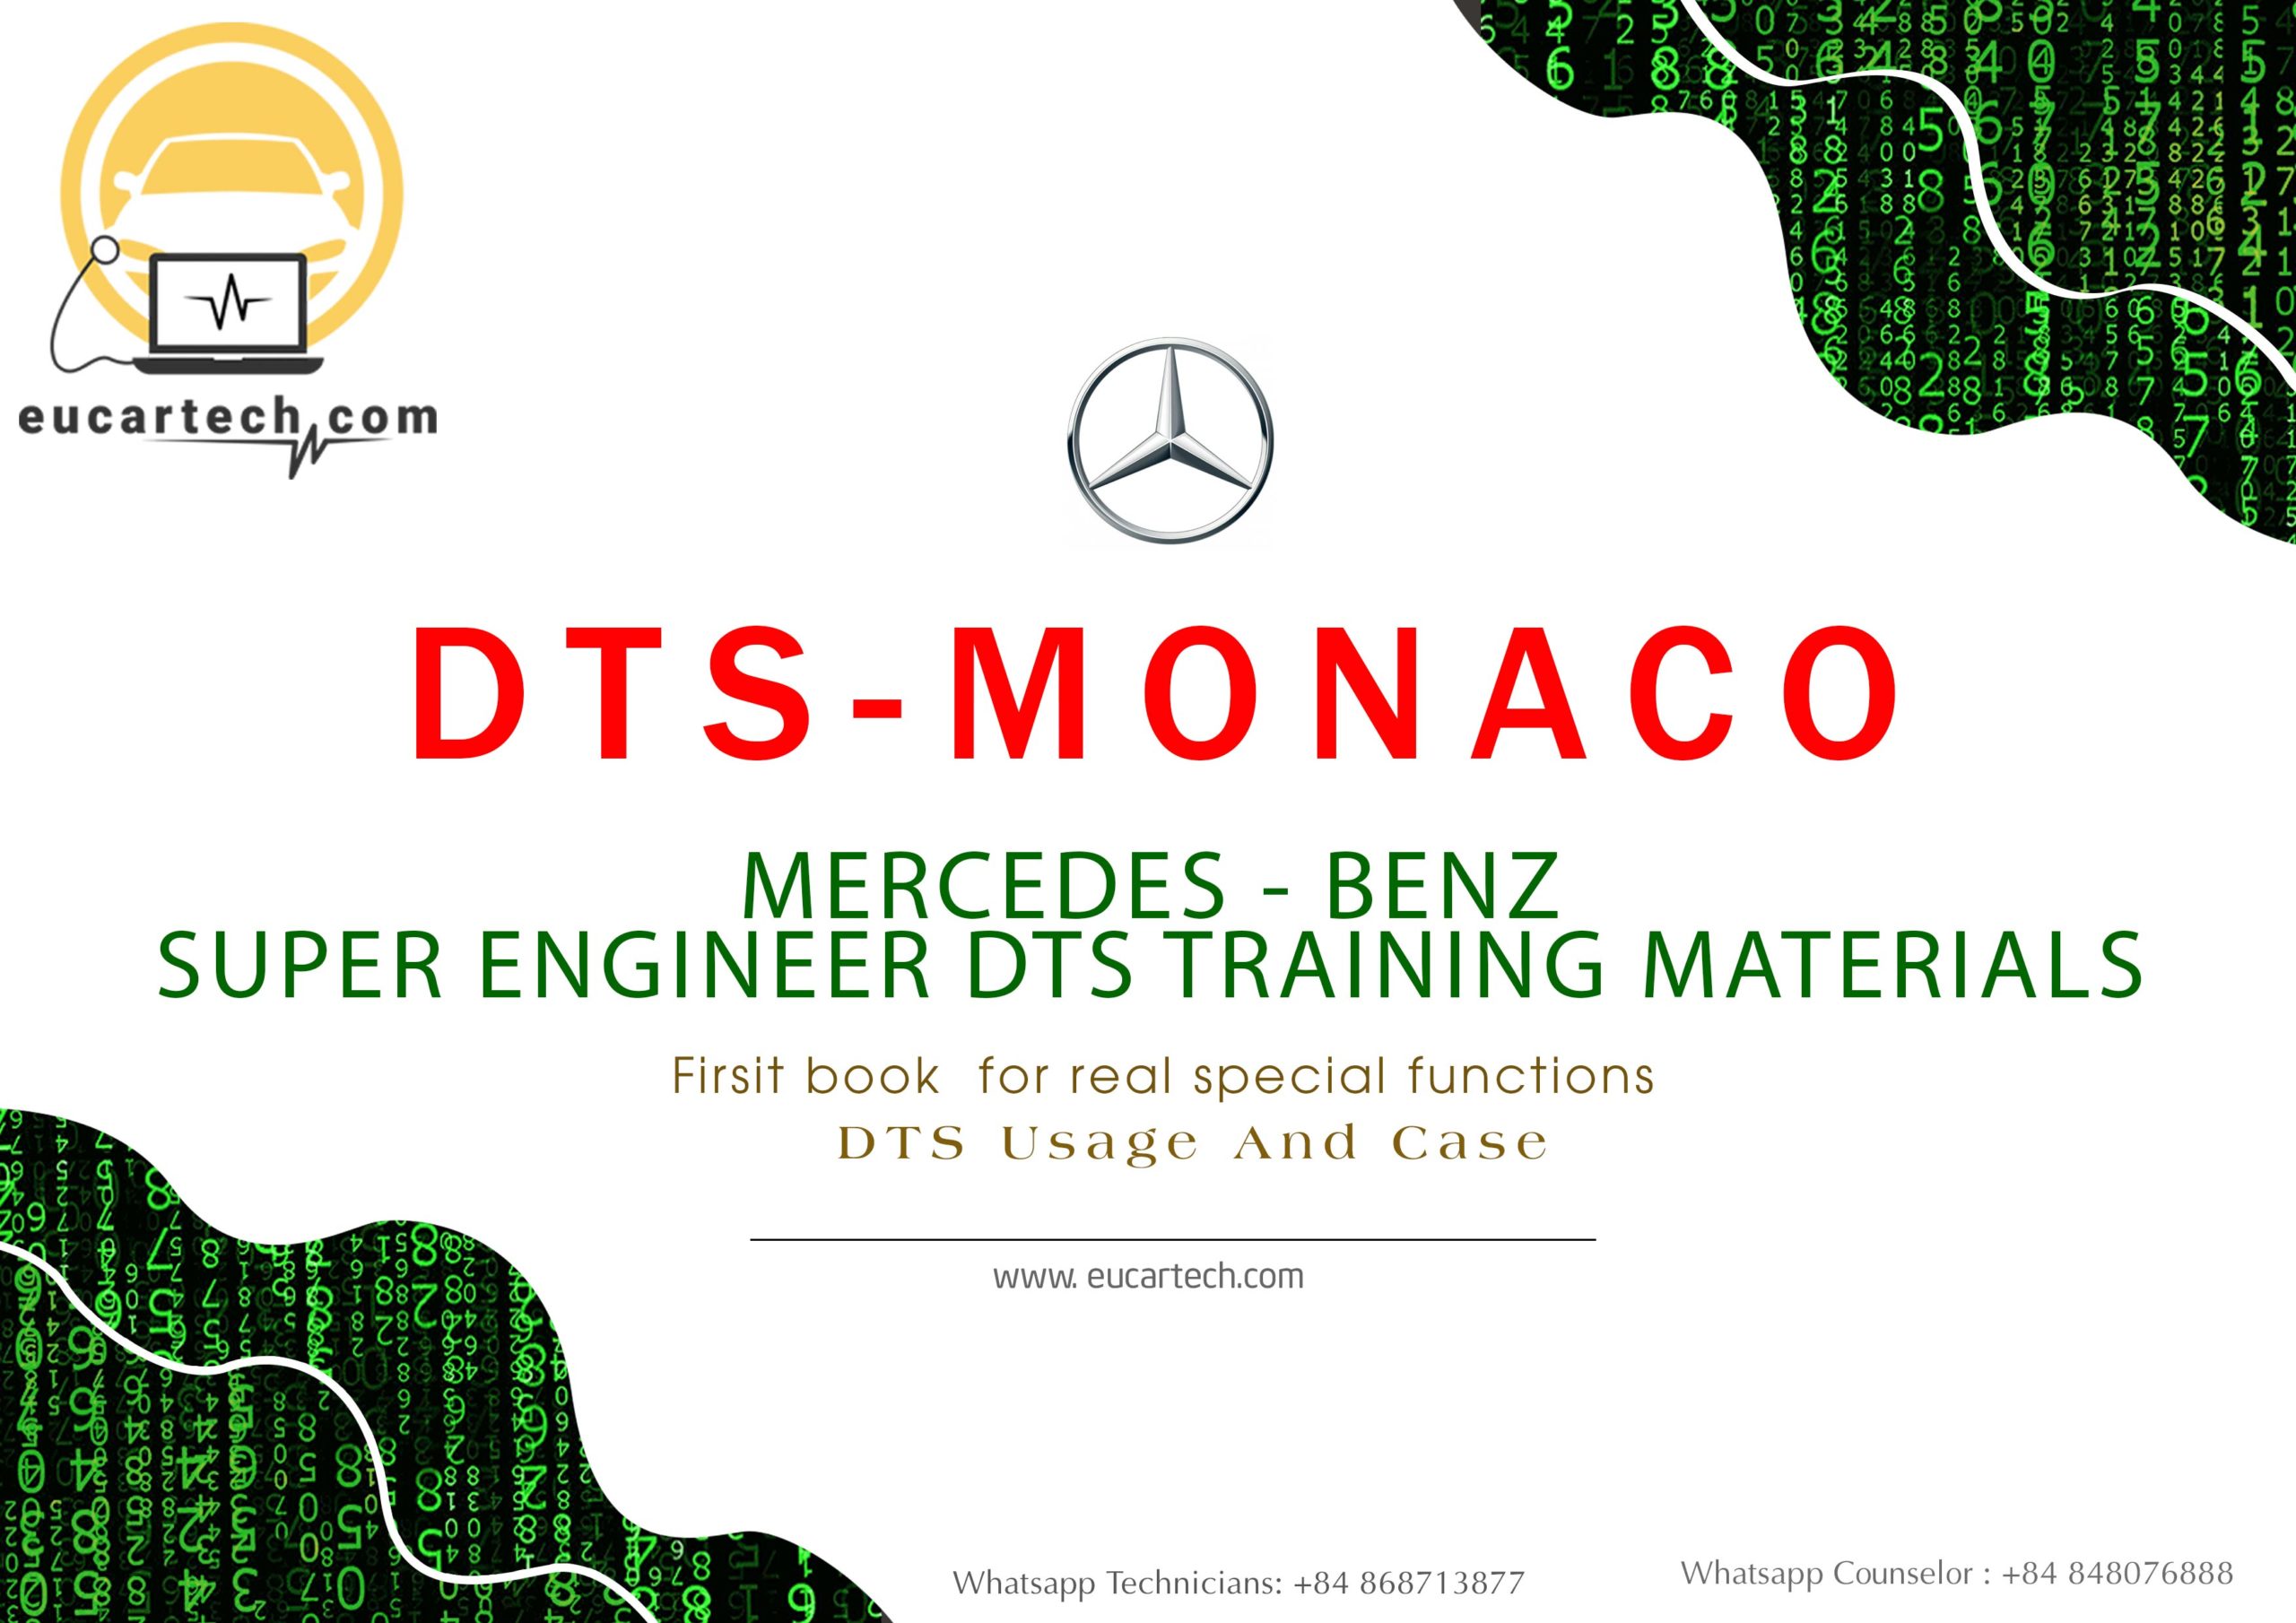 Sách đào tạo DTS Super Engineer của DTS Monaco Mercedes - Benz. Cuốn sách đầu tiên cho các chức năng đặc biệt thực sự. Cách sử dụng và trường hợp DTS